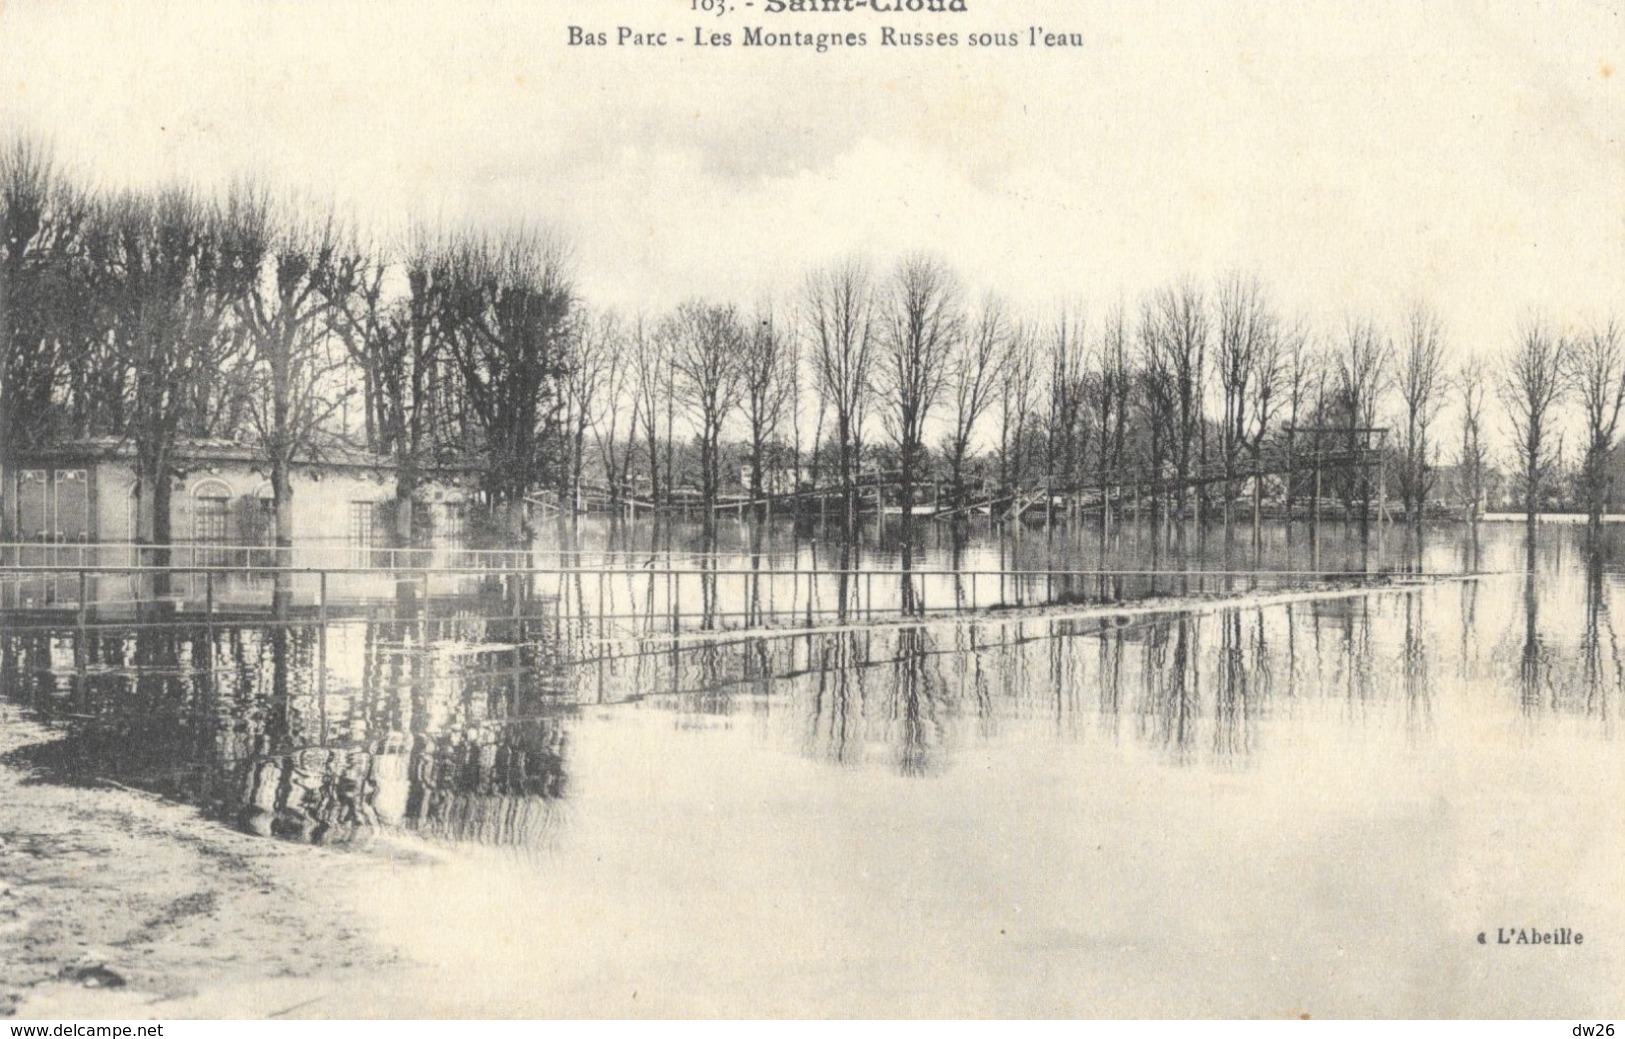 Crues De La Seine 1910 - Saint-Cloud - Bas Parc - Les Montagnes Russes Sous L'eau - Carte L'Abeille N° 103 Non Circulée - Überschwemmungen